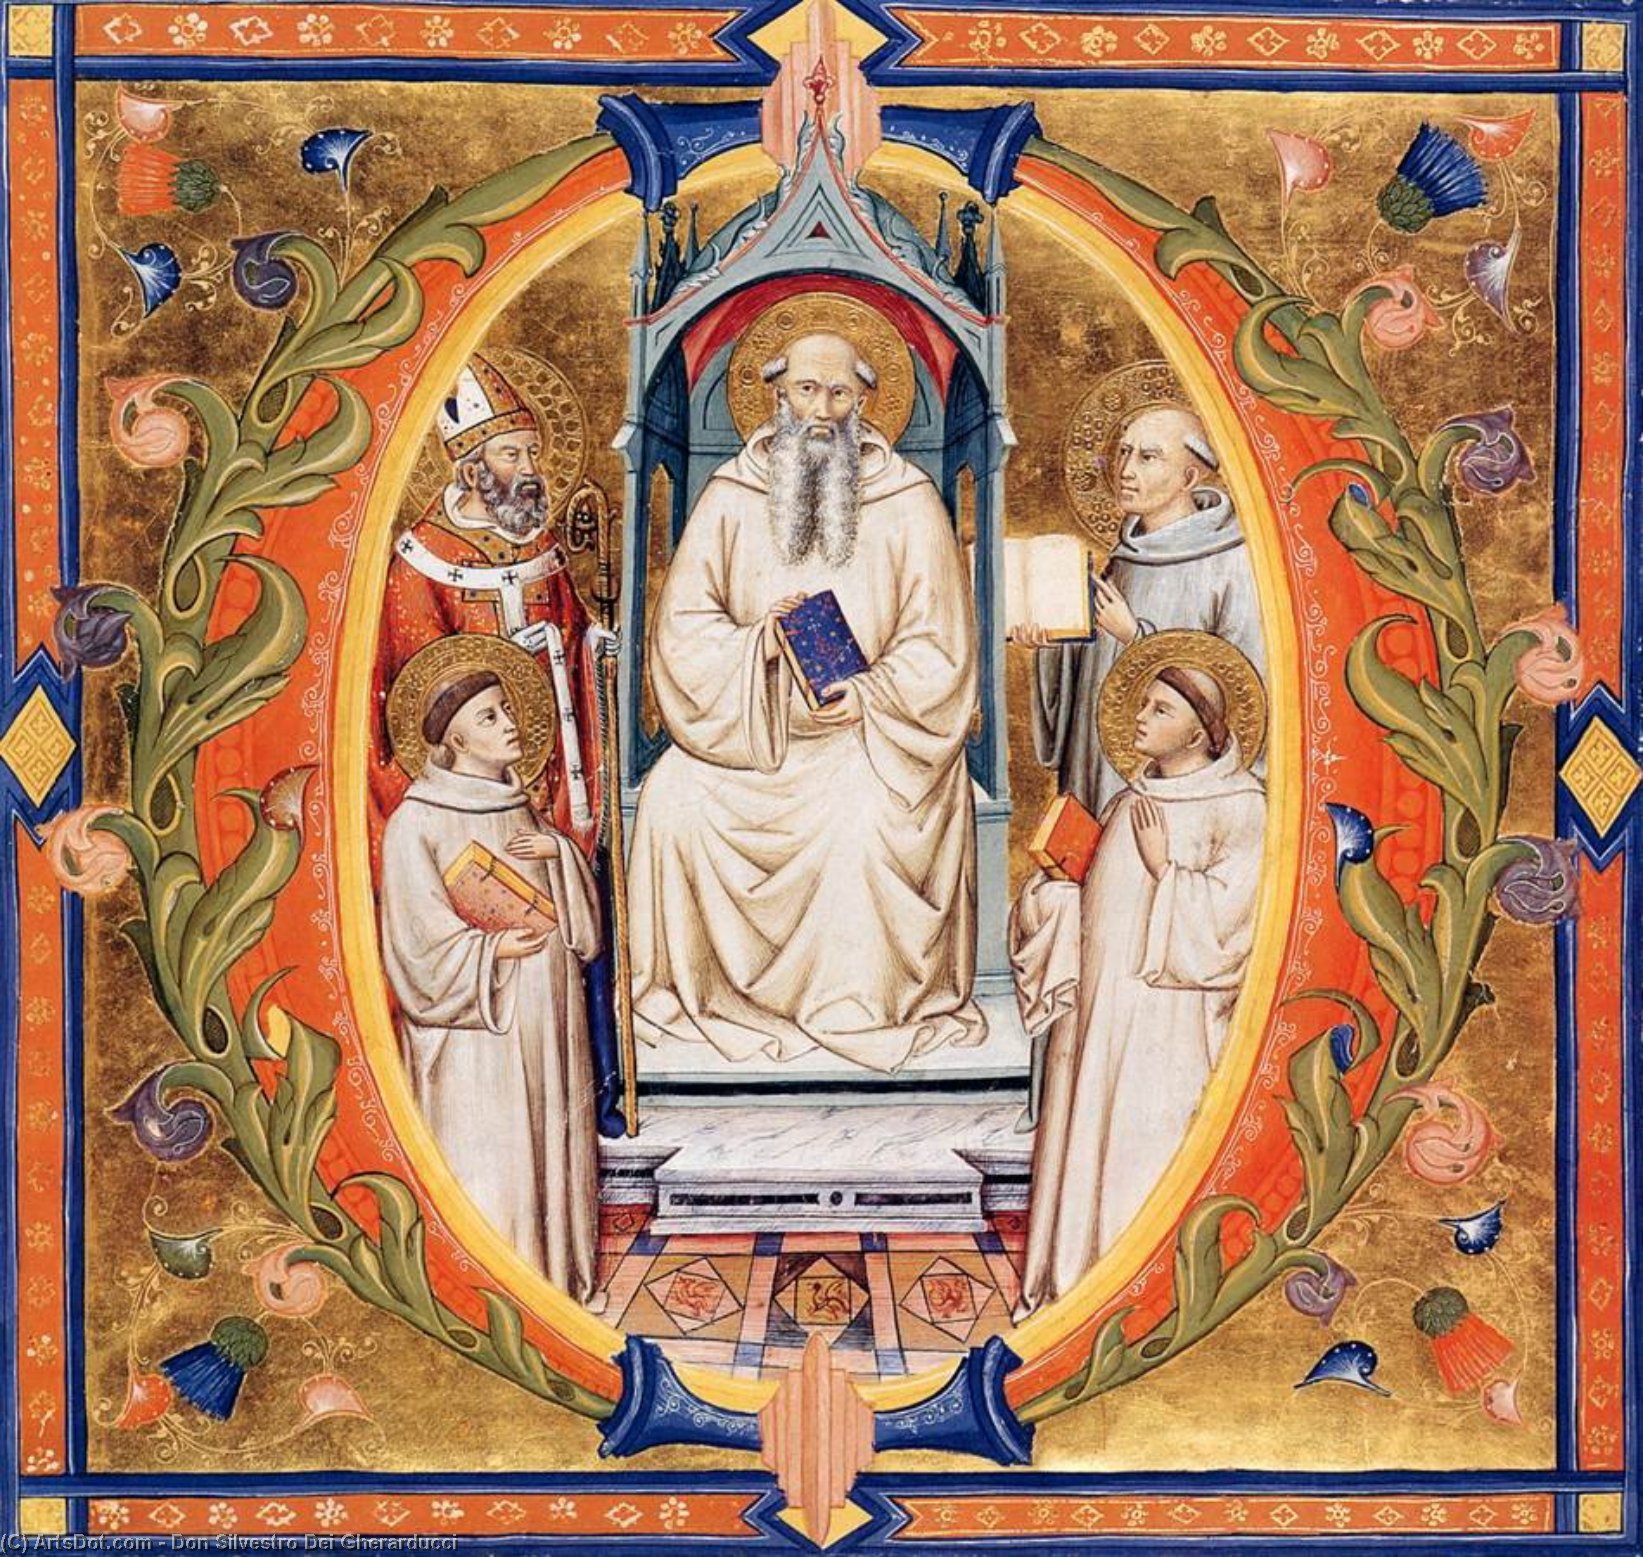 Comprar Reproducciones De Arte Del Museo Gradual de Santa Maria degli Angeli (Folio 90), 1370 de Don Silvestro Dei Gherarducci (1339-1399, Italy) | ArtsDot.com